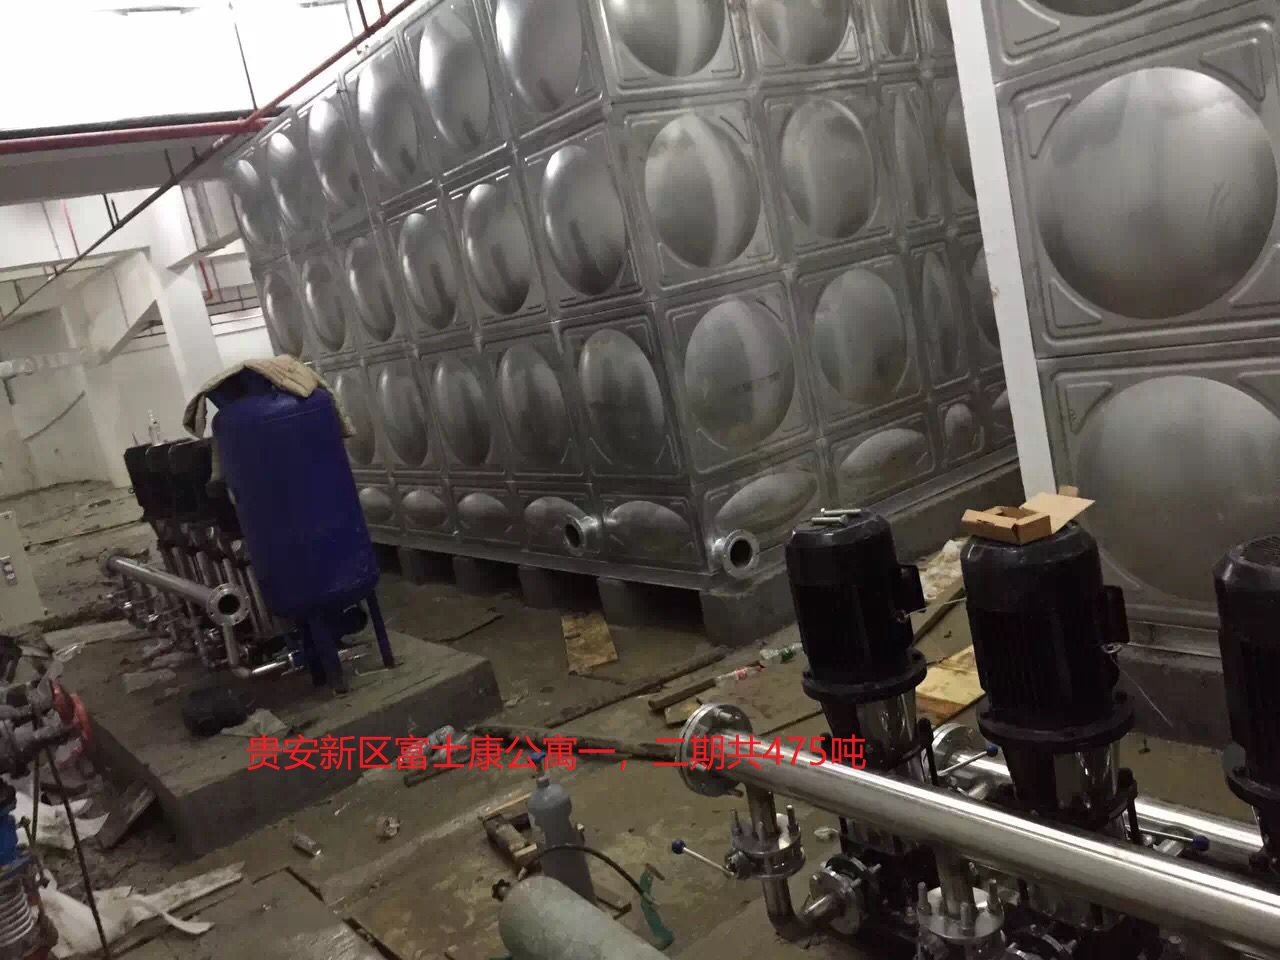 8富士康475立方米水箱项目.png